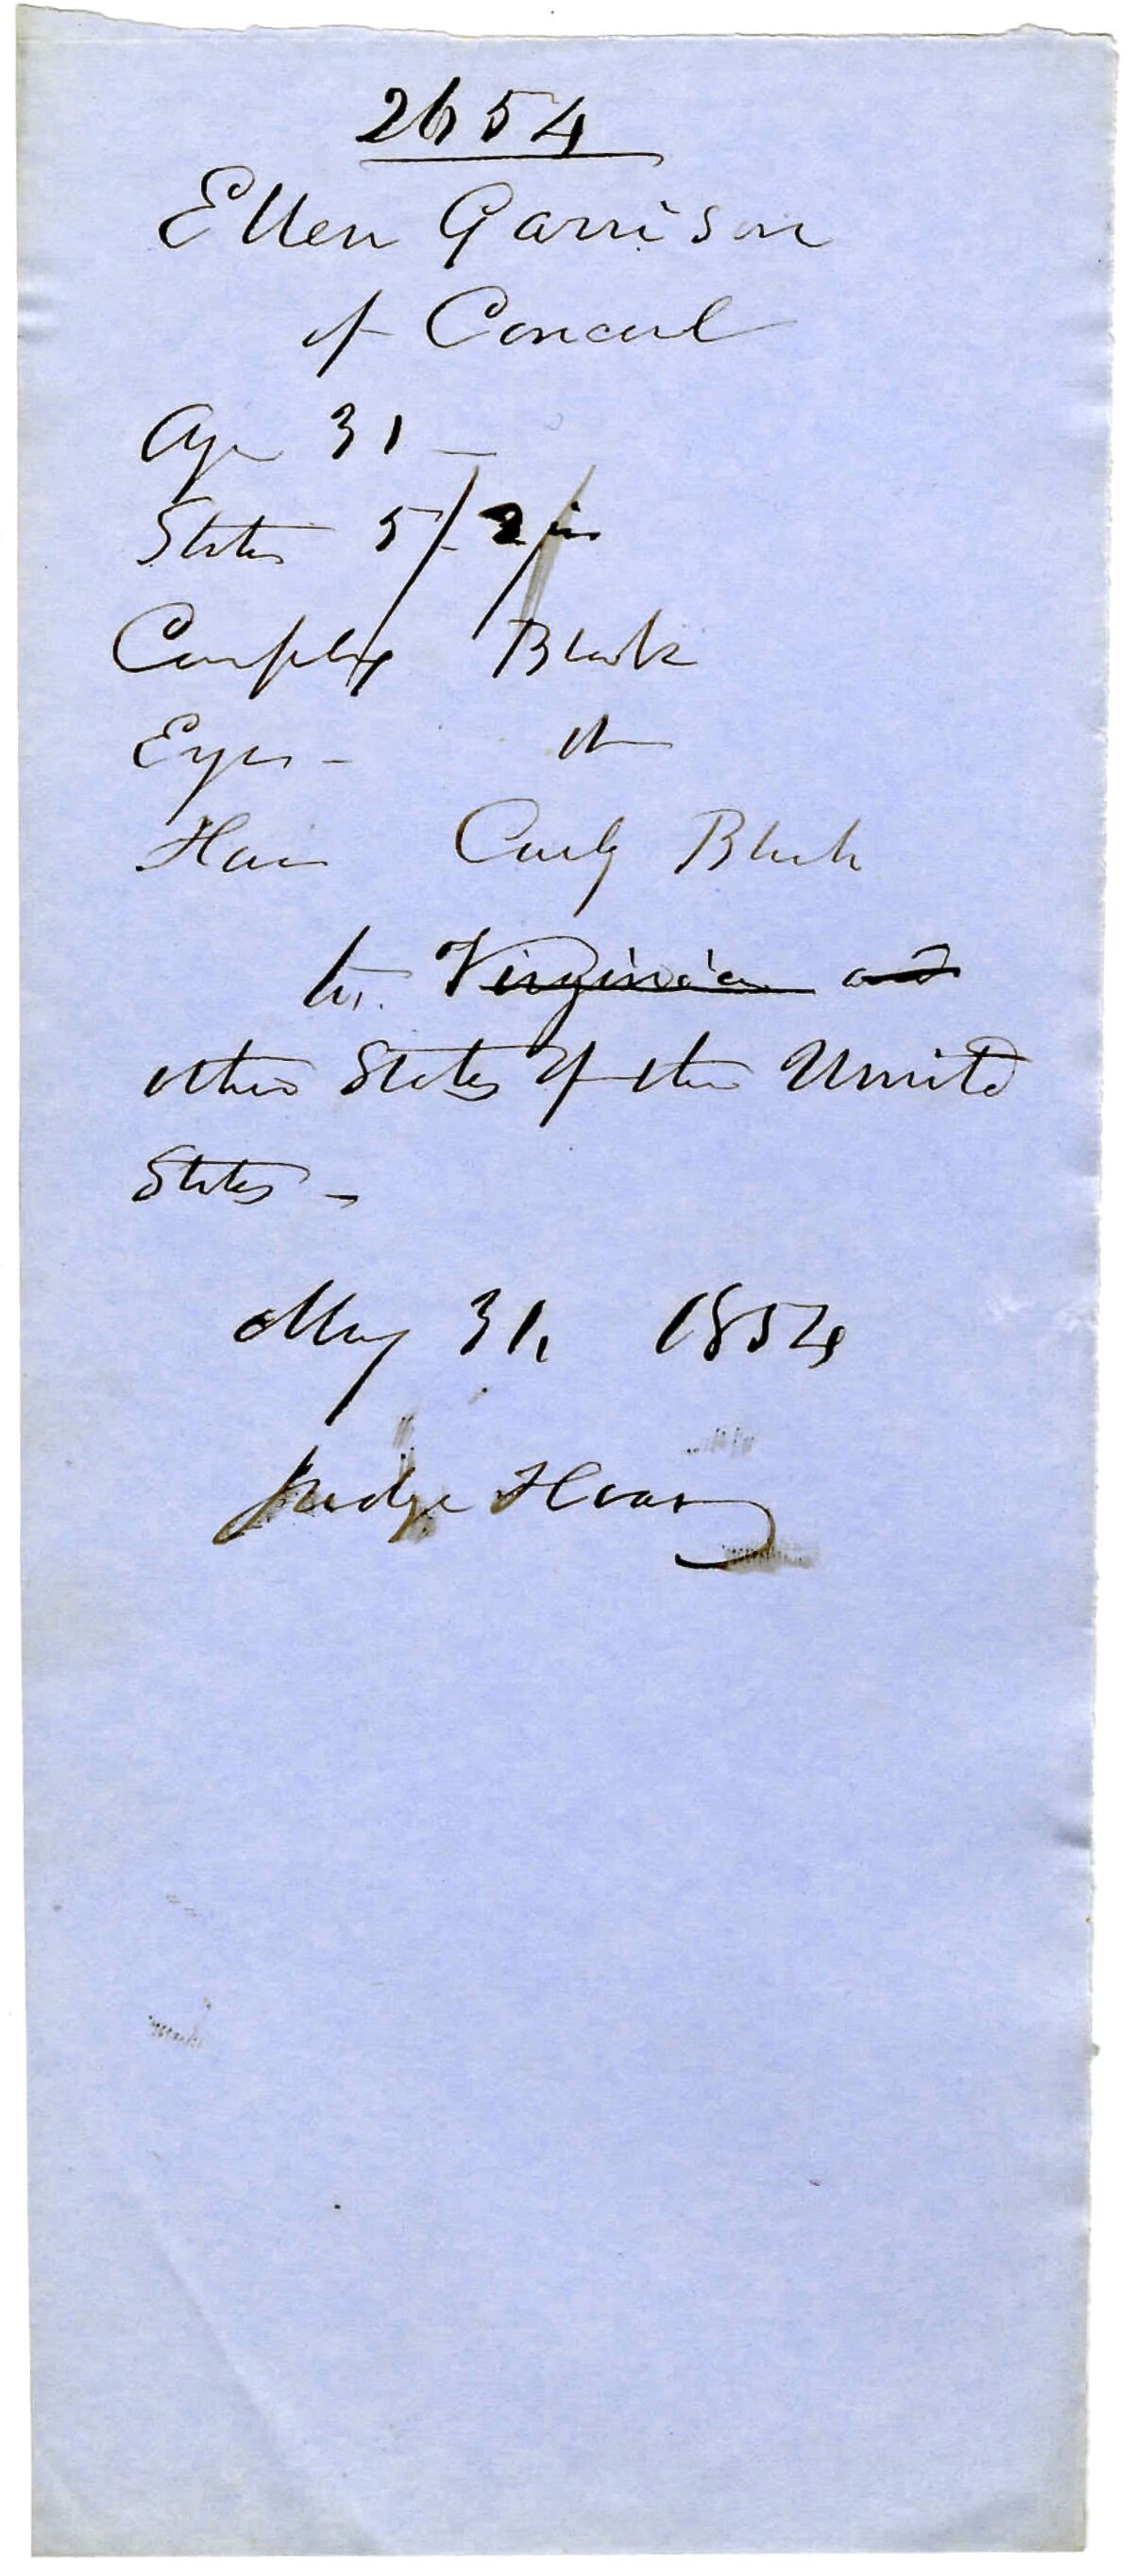 The paper passport that was issued to Ellen Garrison Clark in 1854